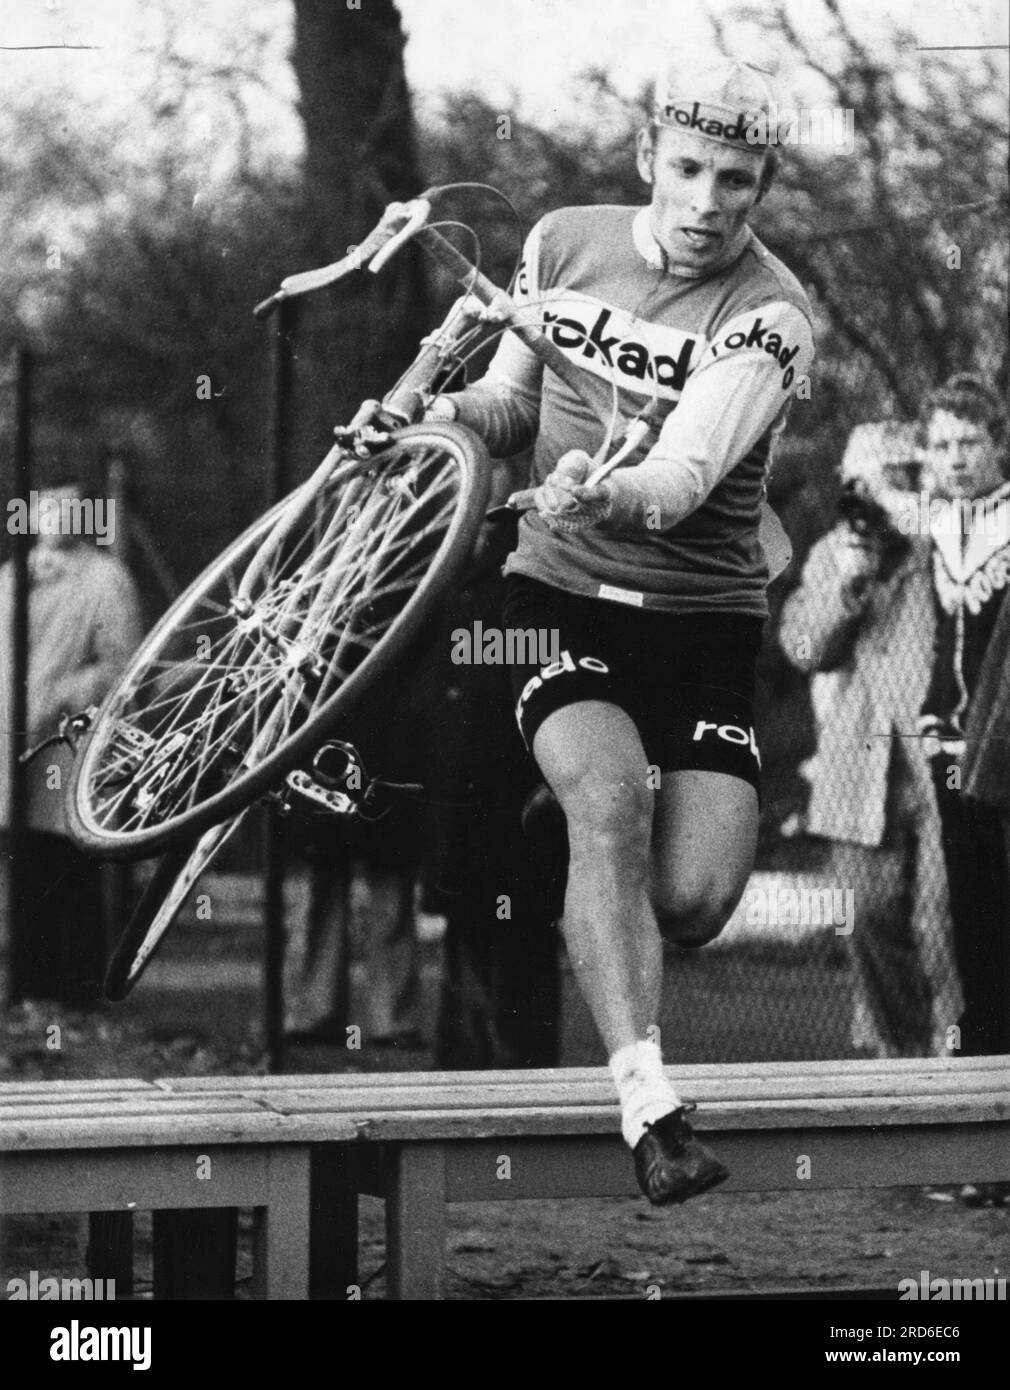 Wolfshohl, Rolf, * 27.12.1938, athlète allemand (coureur cycliste), lors de la course de cross-country, 1972, INFORMATIONS-AUTORISATION-DROITS-SUPPLÉMENTAIRES-NON-DISPONIBLES Banque D'Images